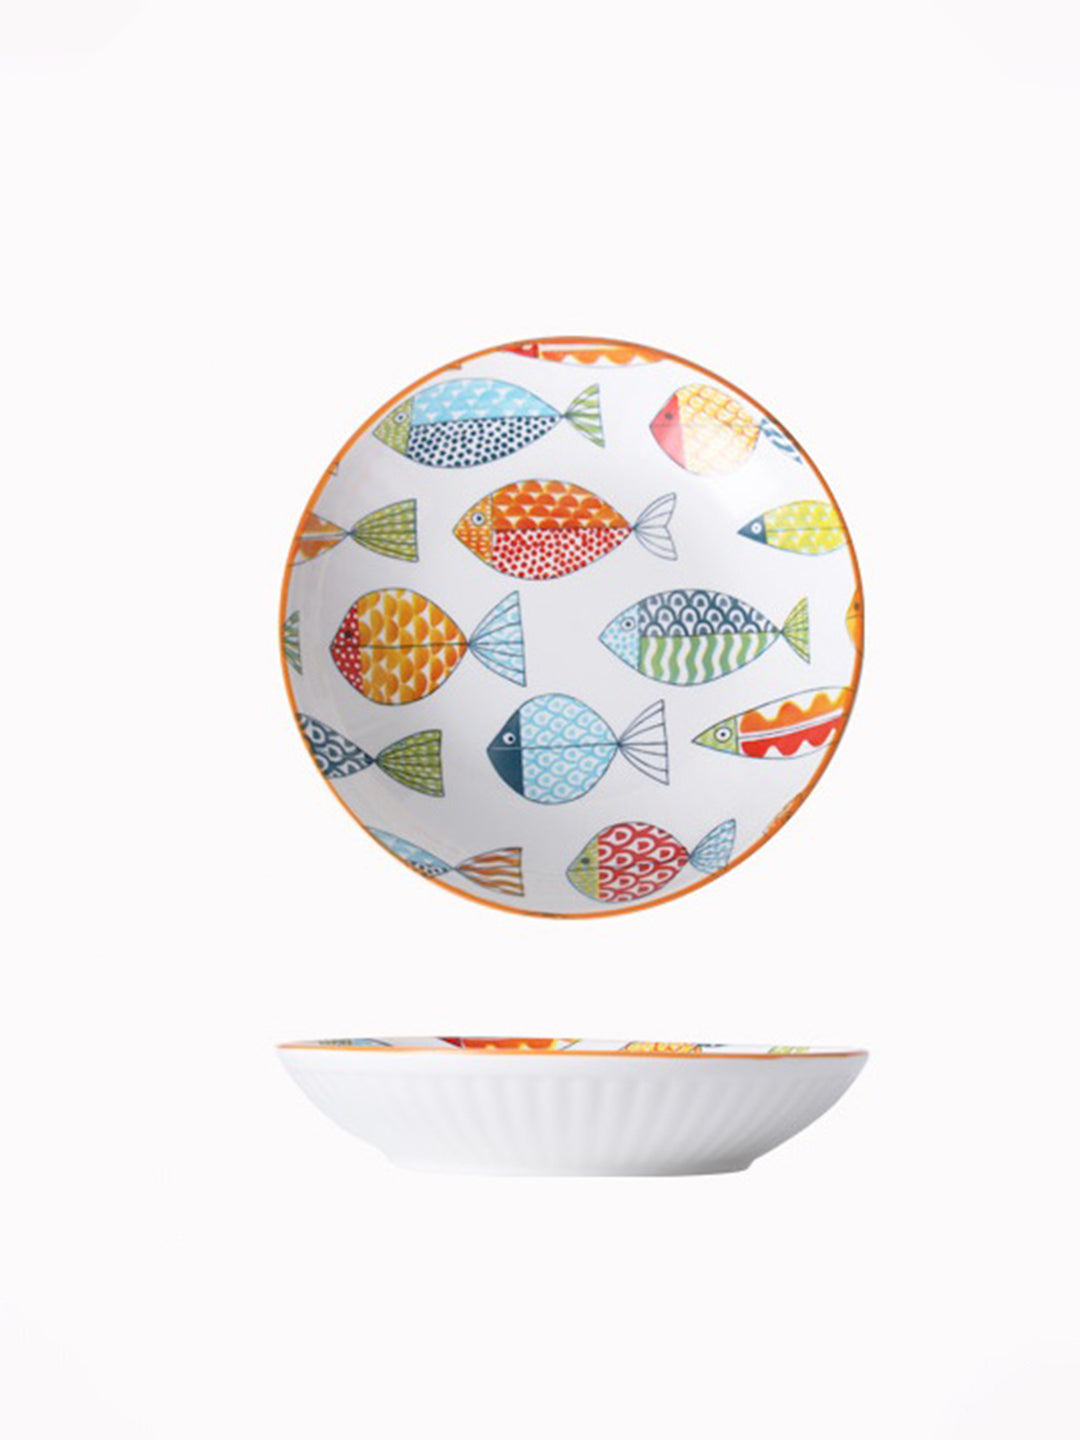 VON CASA Round Ceramic Serving Bowl - Multicolor